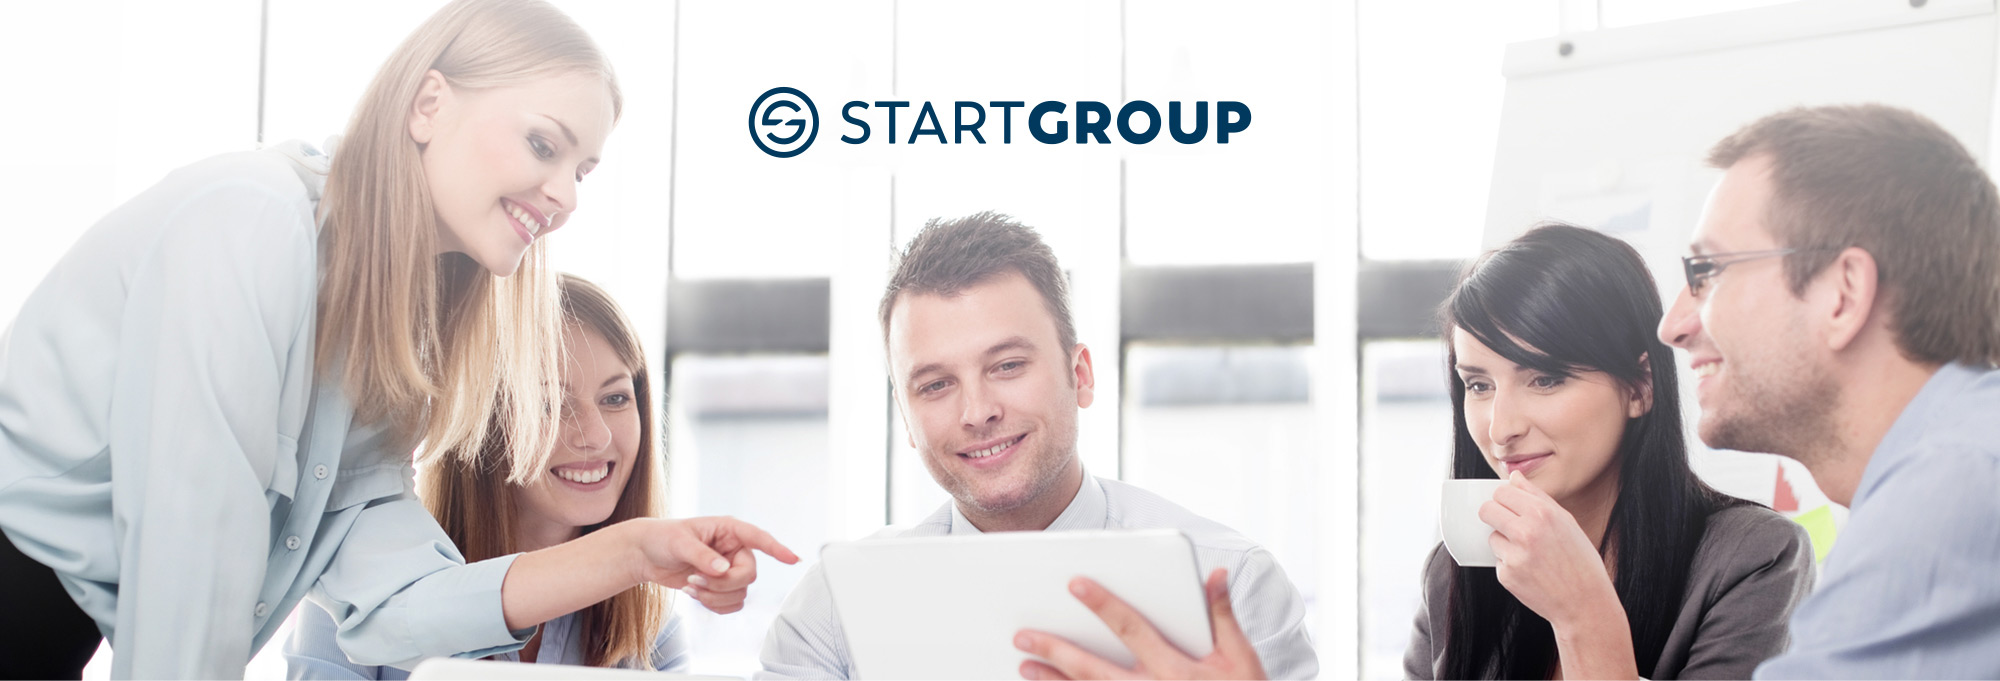 startgroup